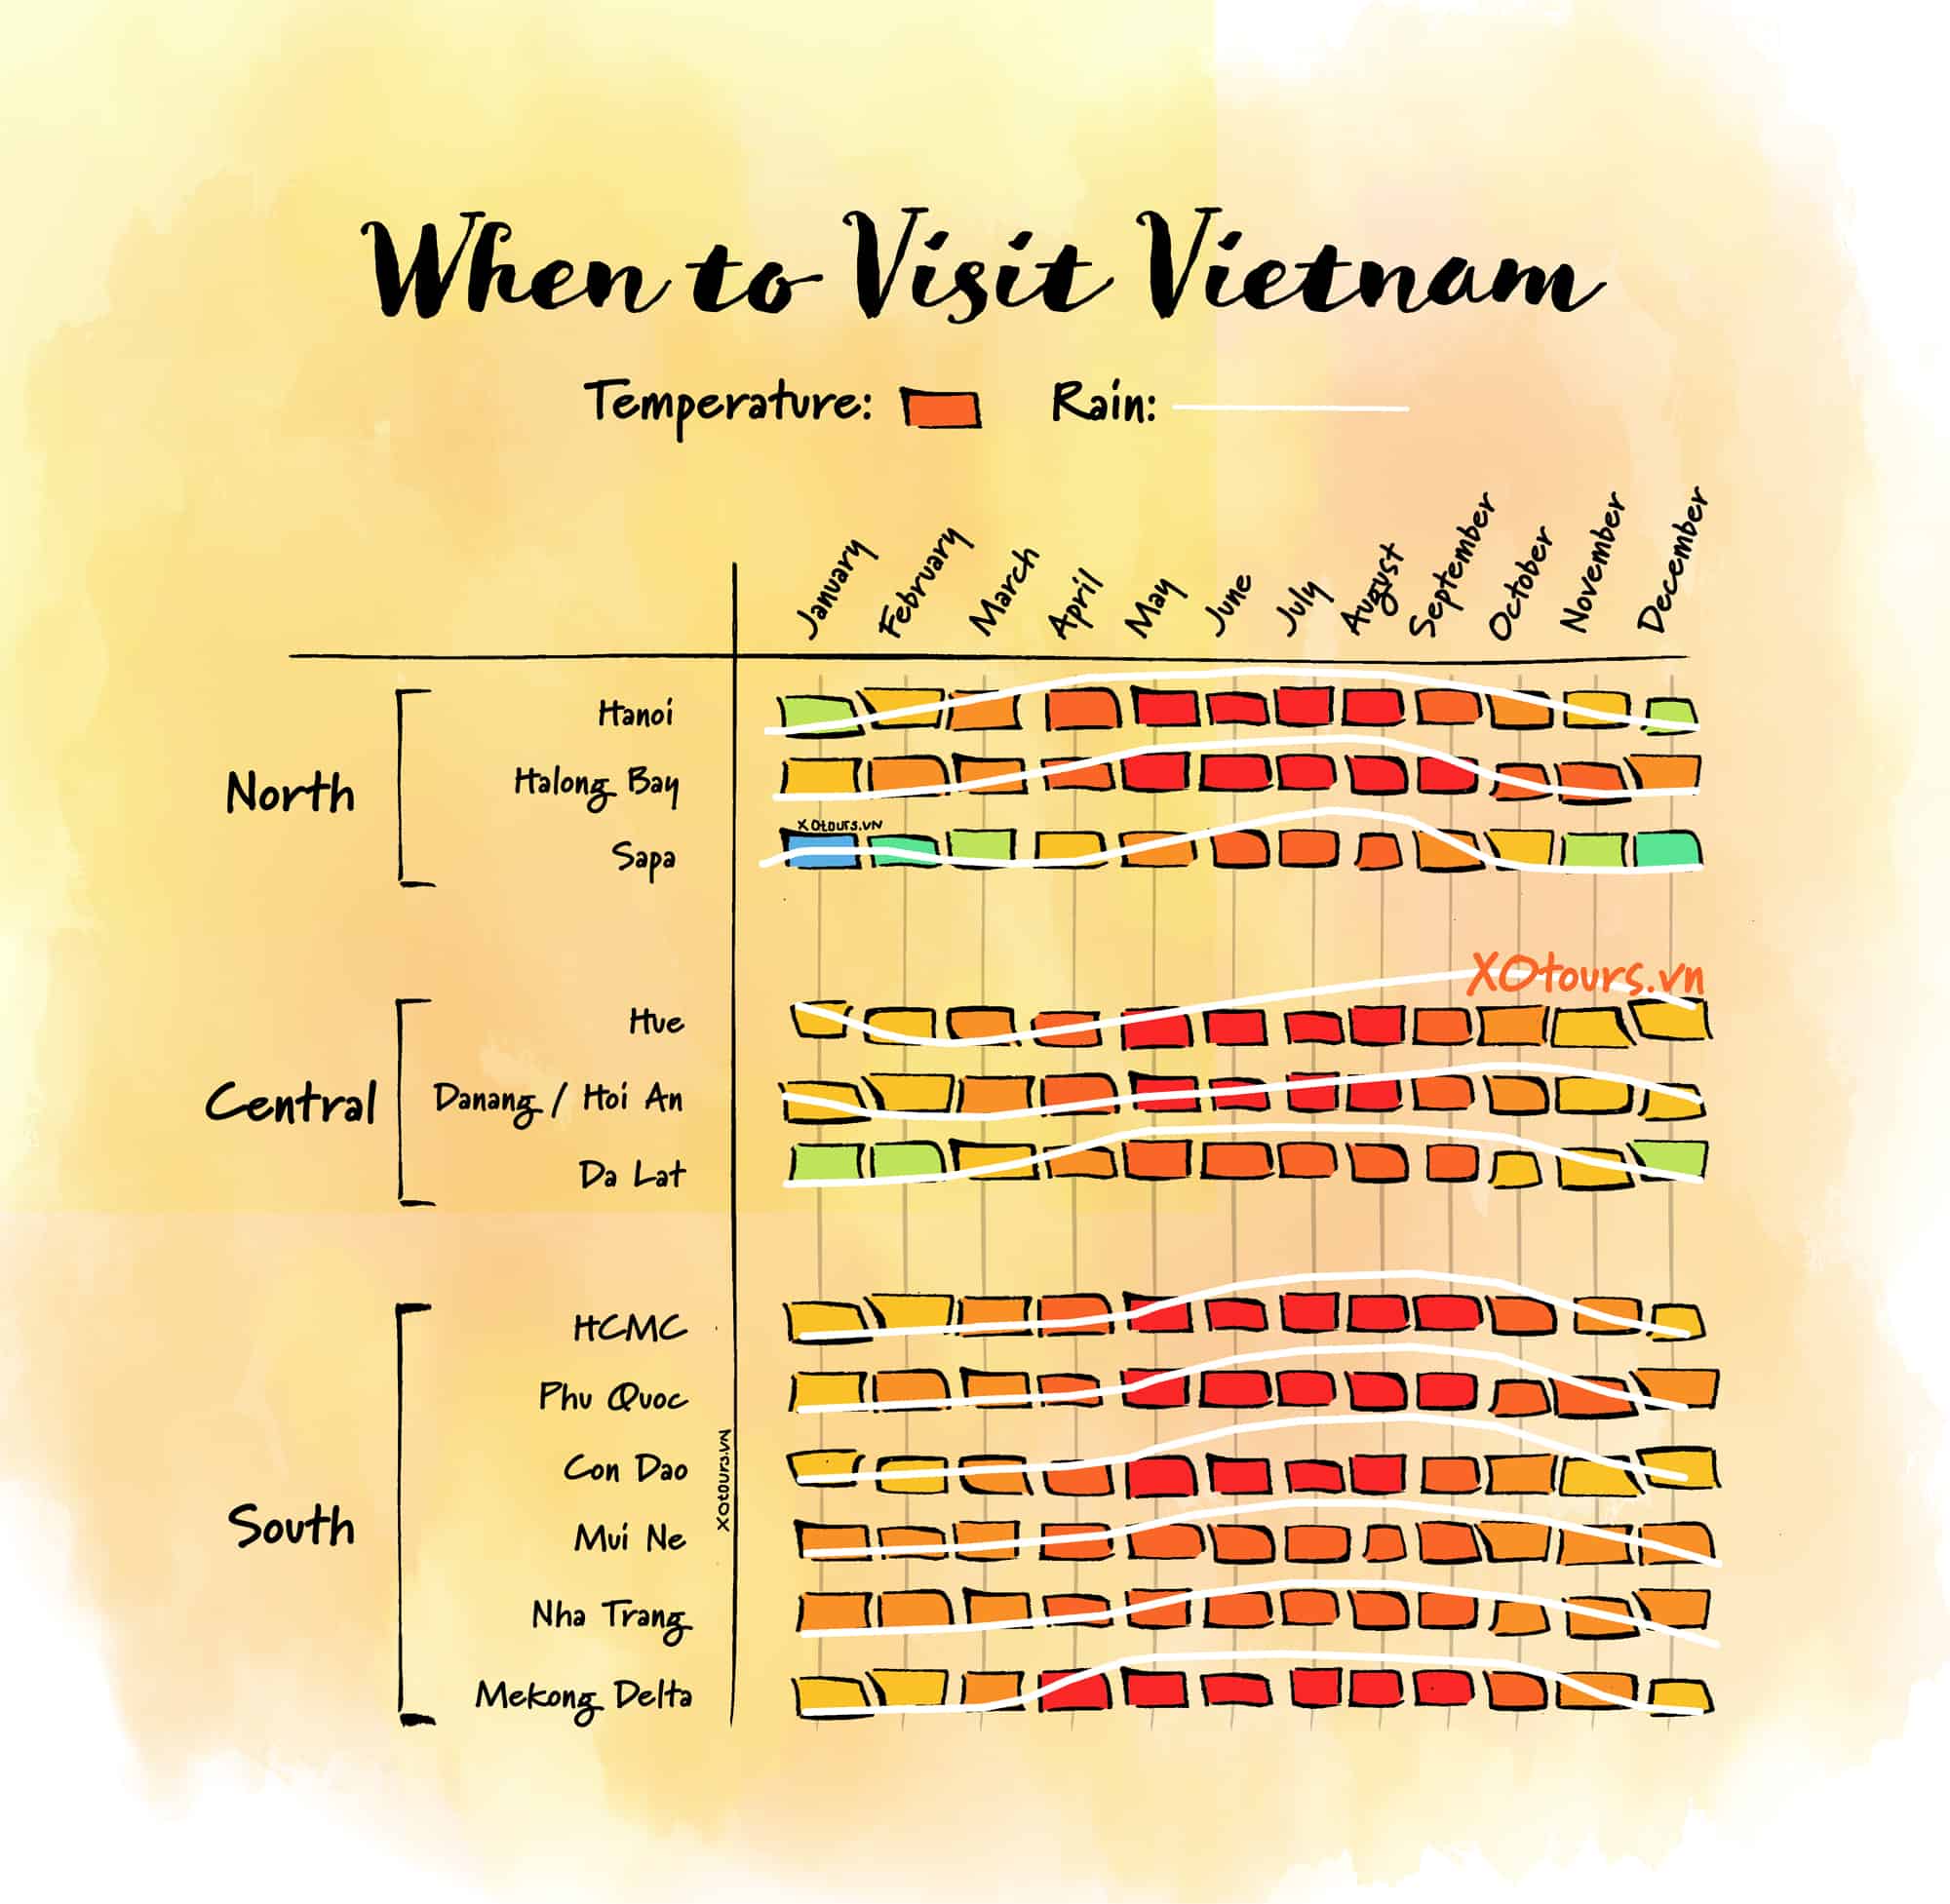 Planning a trip to Vietnam